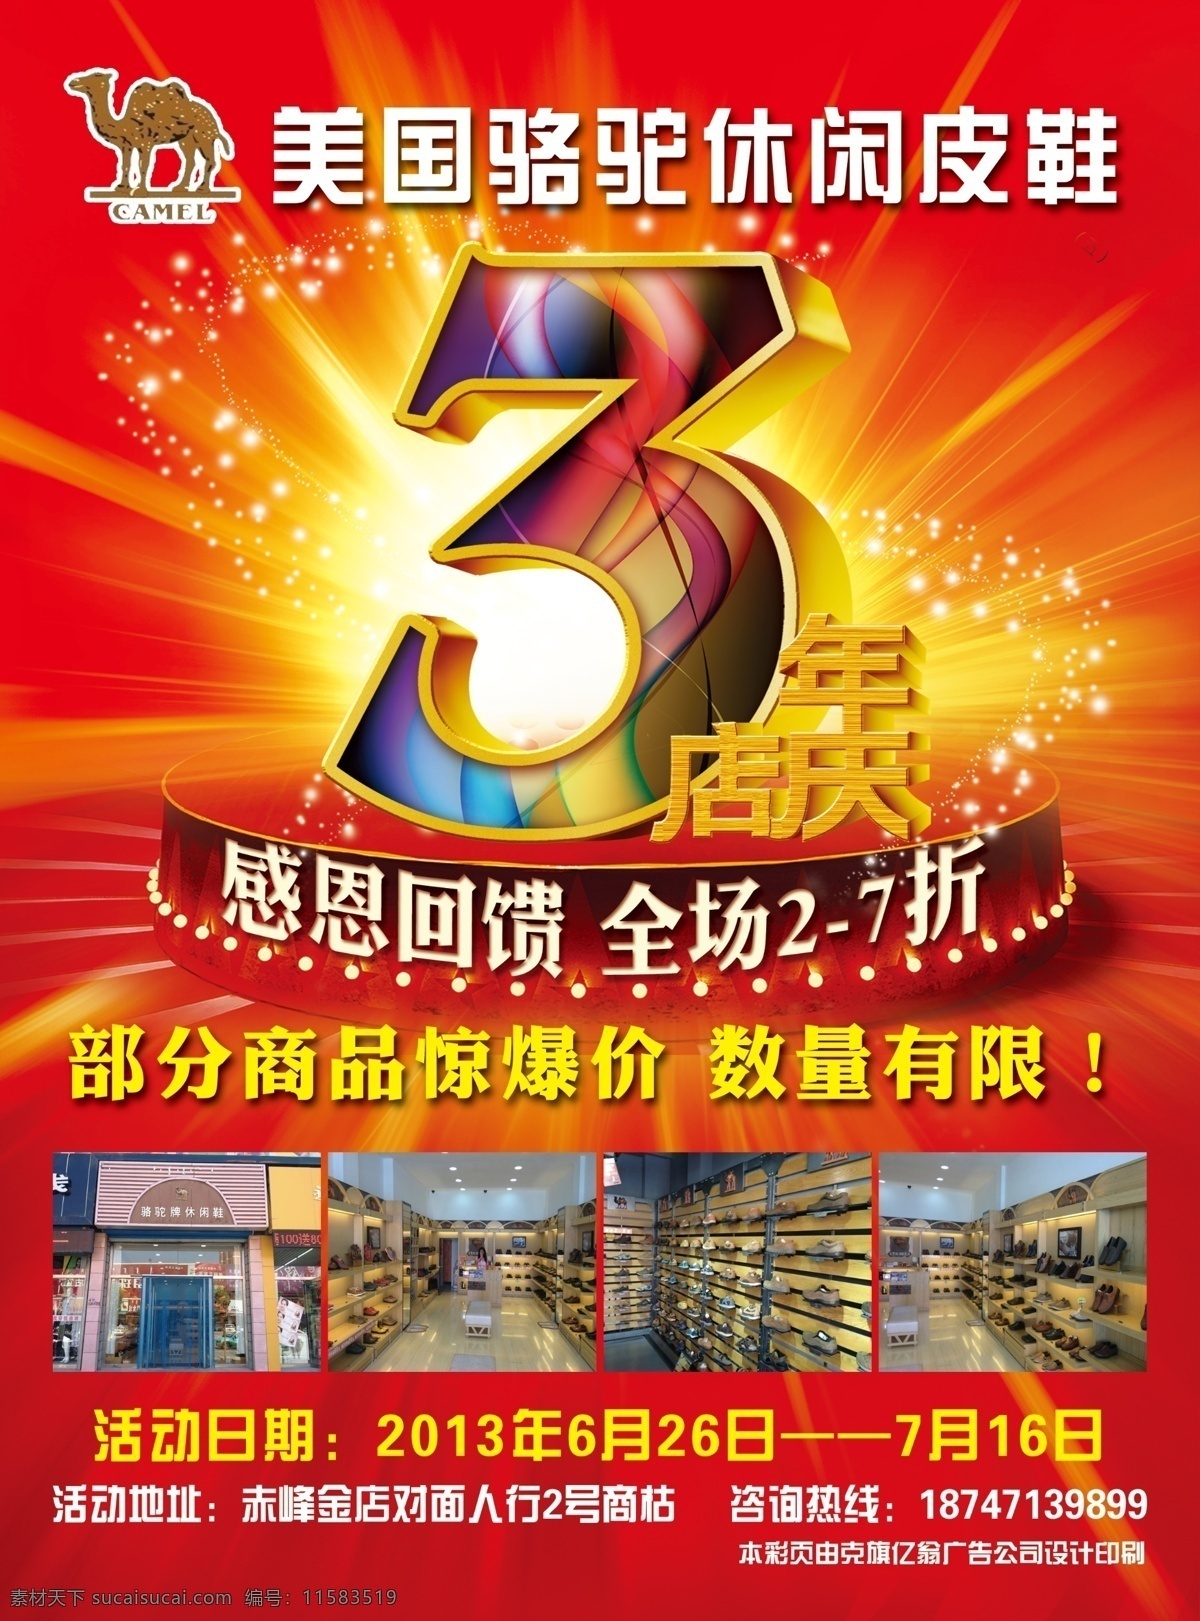 3周年海报 数字3 3年店庆 红色背景 星 发光 骆驼标 广告设计模板 源文件